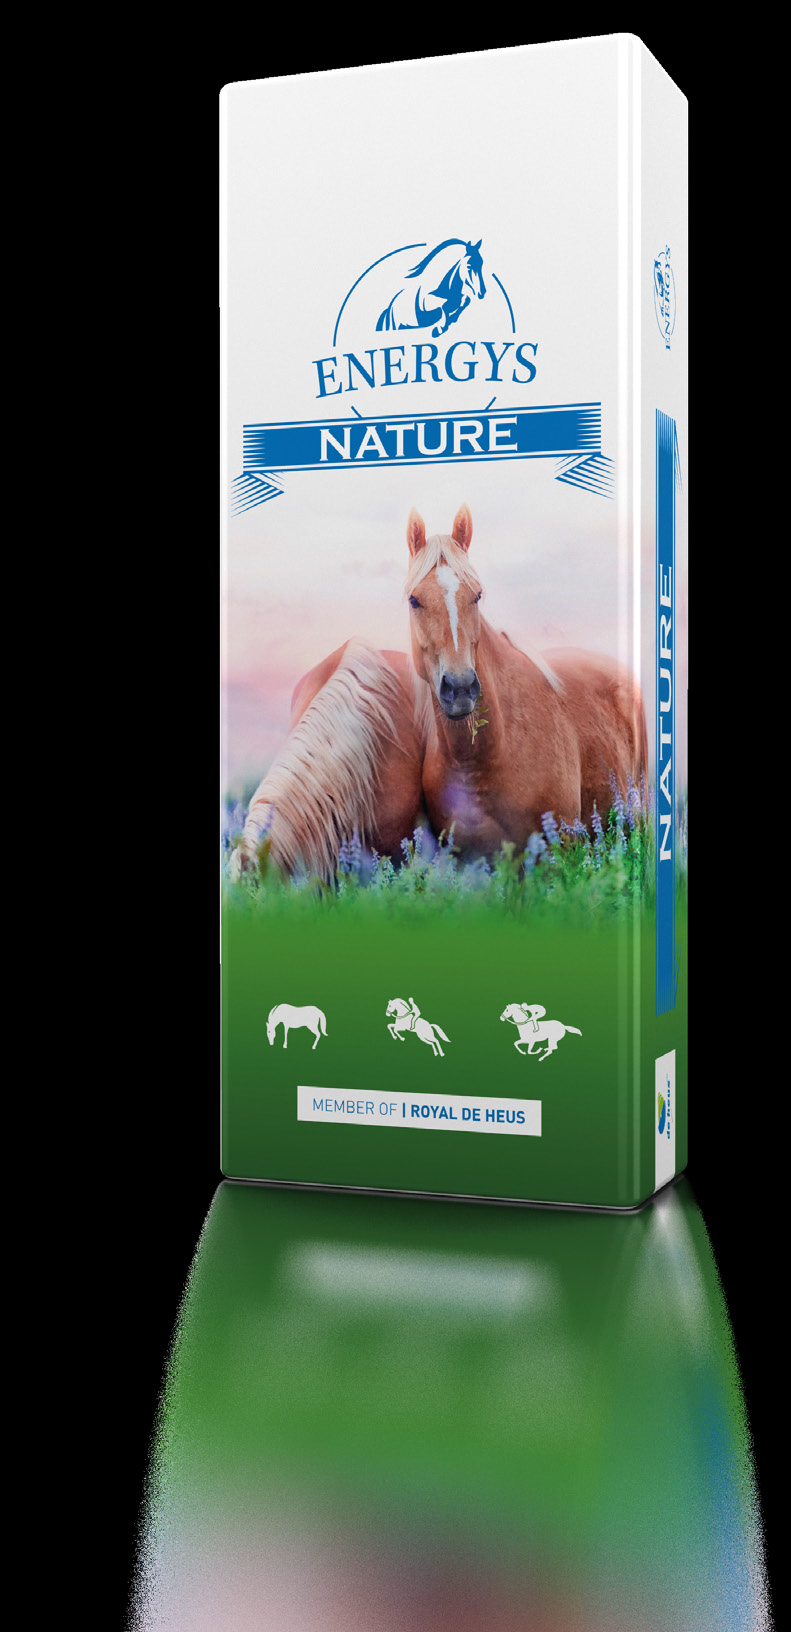 NTUR NTUR řada umožňuje majitelům koní kreativně sestavovat krmnou dávku, která bude plně respektovat přirozené potřeby koní a jejich citlivé trávení.